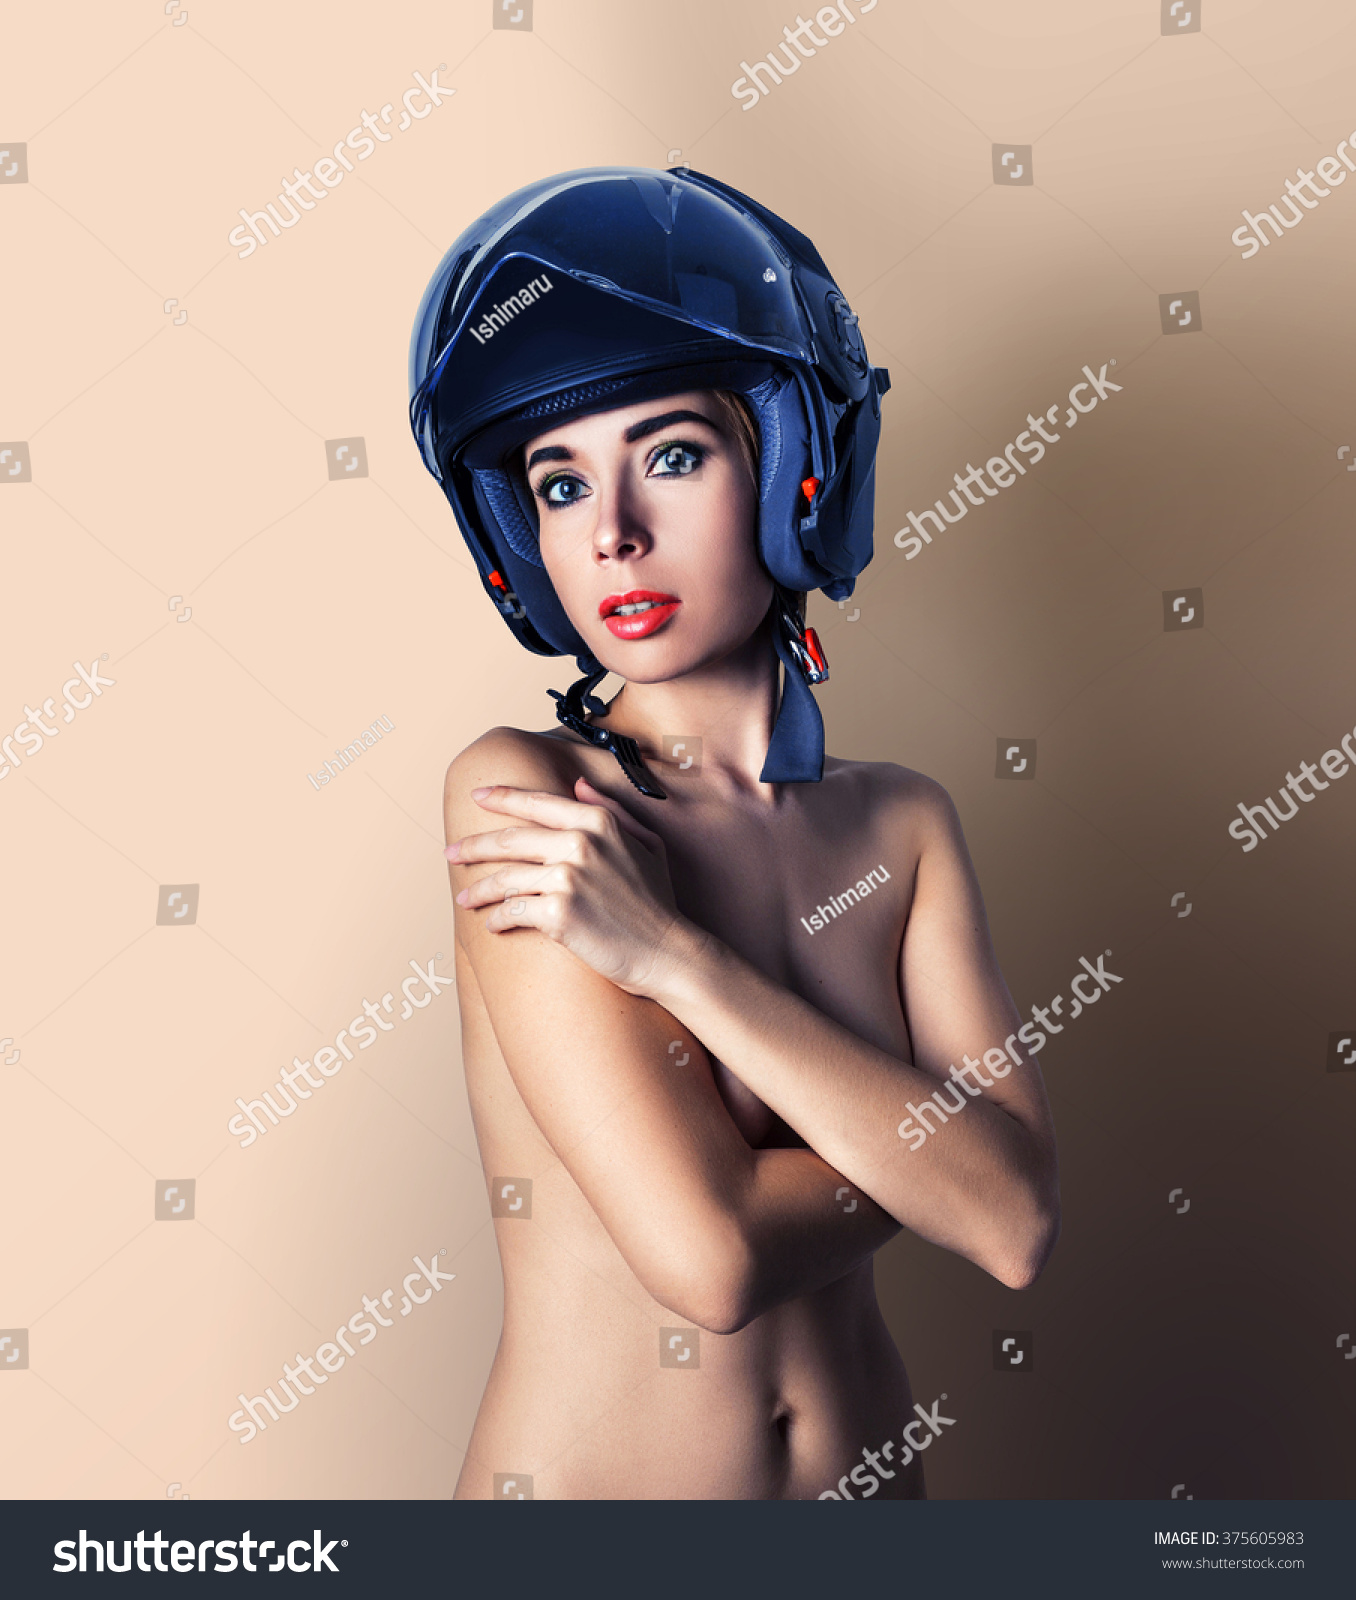 Naked Girl Motorcycle Rider Black Helmet Stock Photo Shutterstock